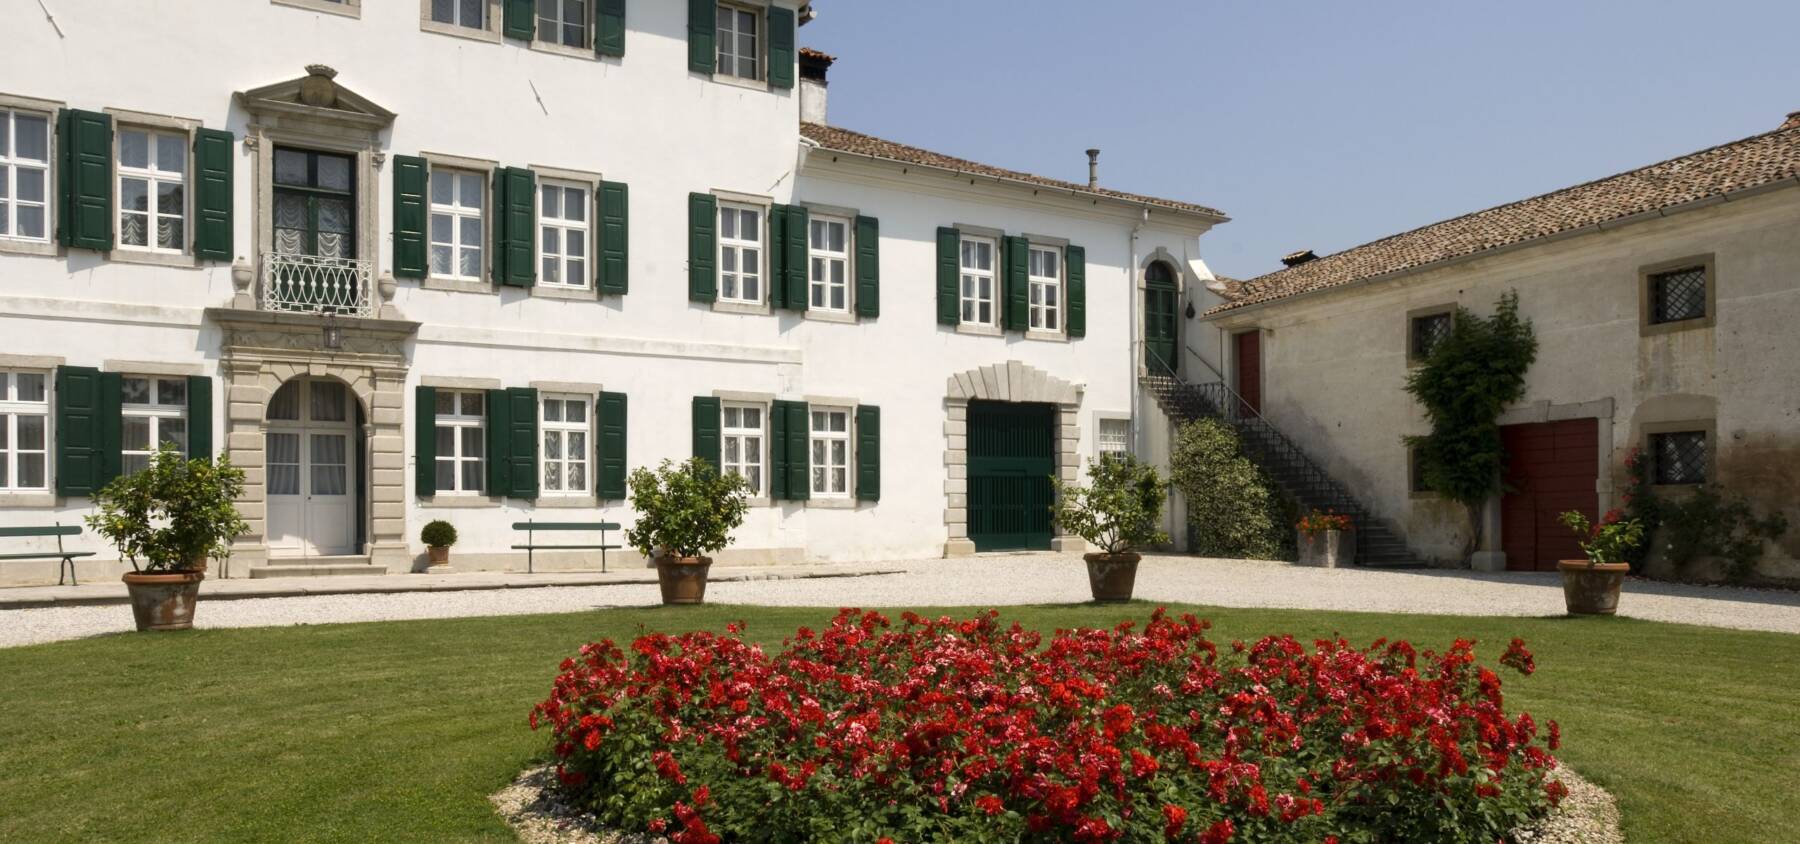 Villa Beretta - Lauzacco (Udine)